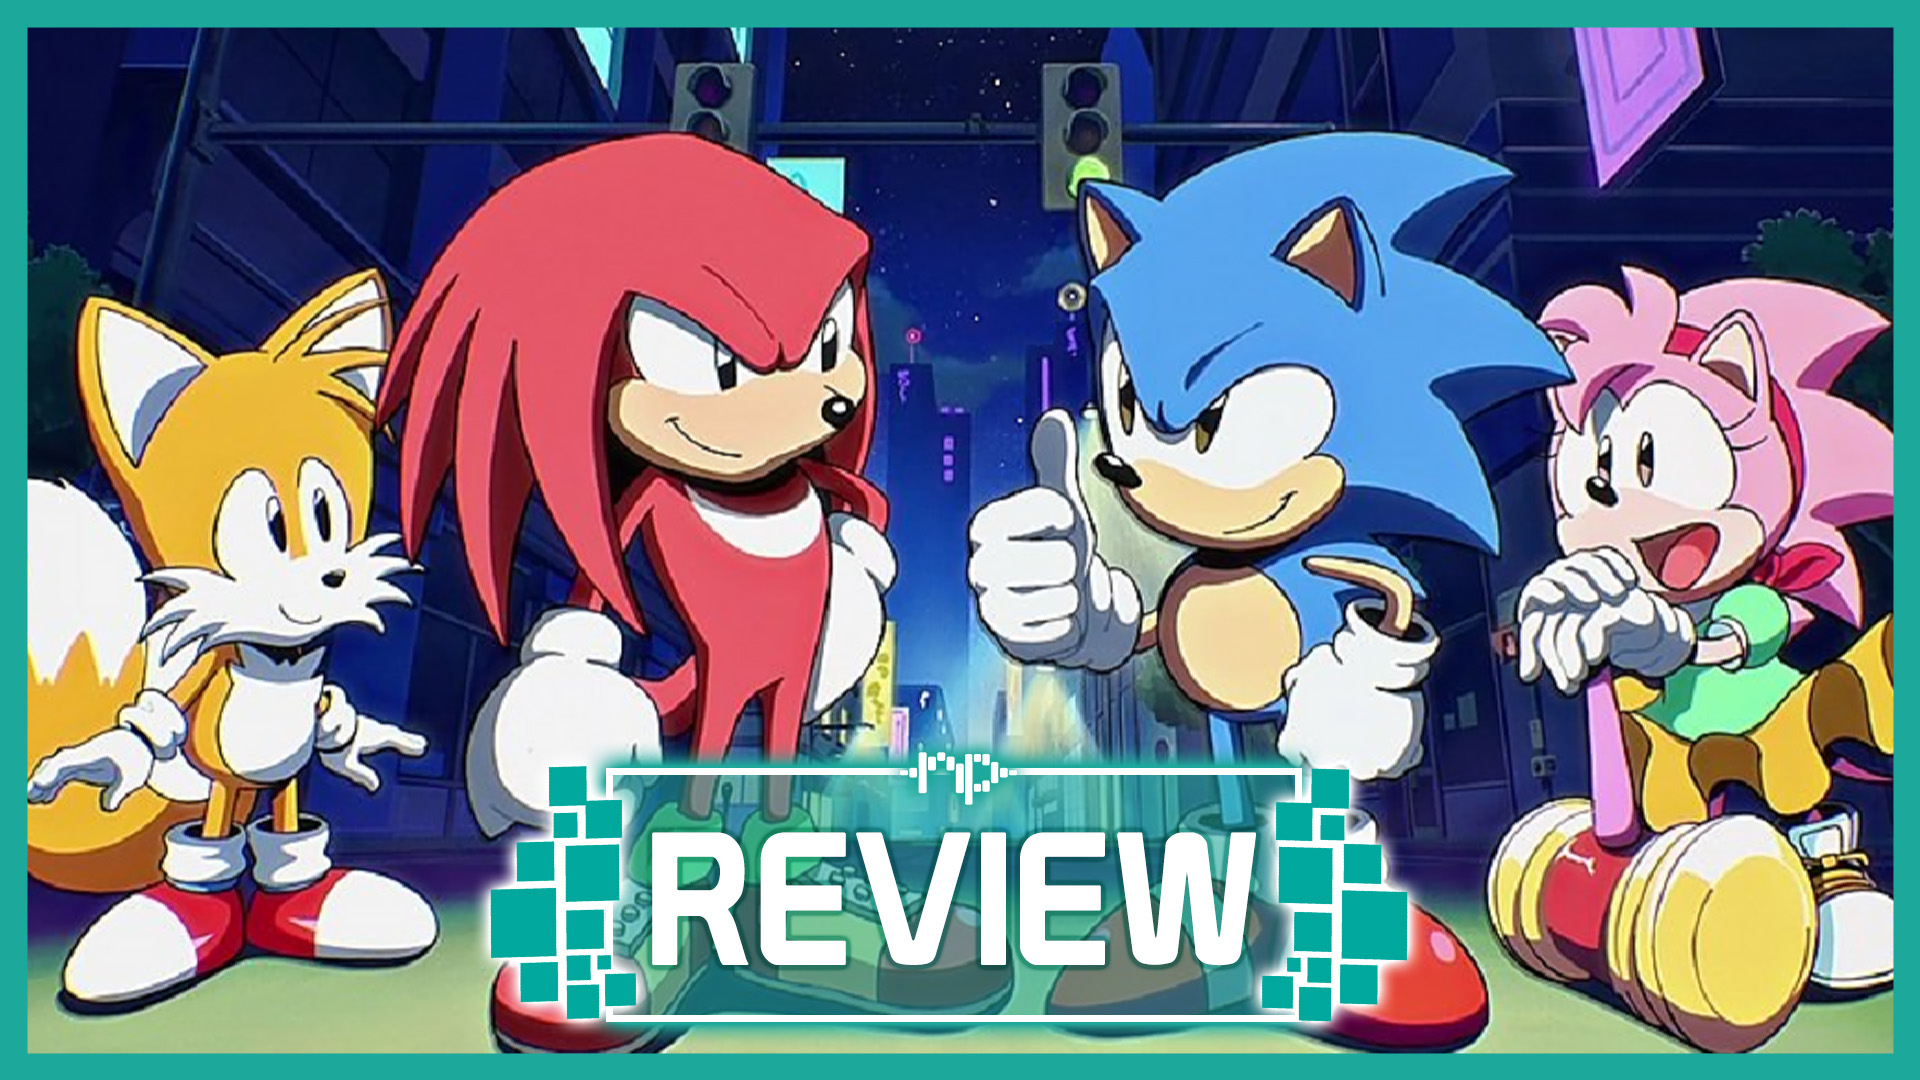 Sonic Origins Review - RetroResolve